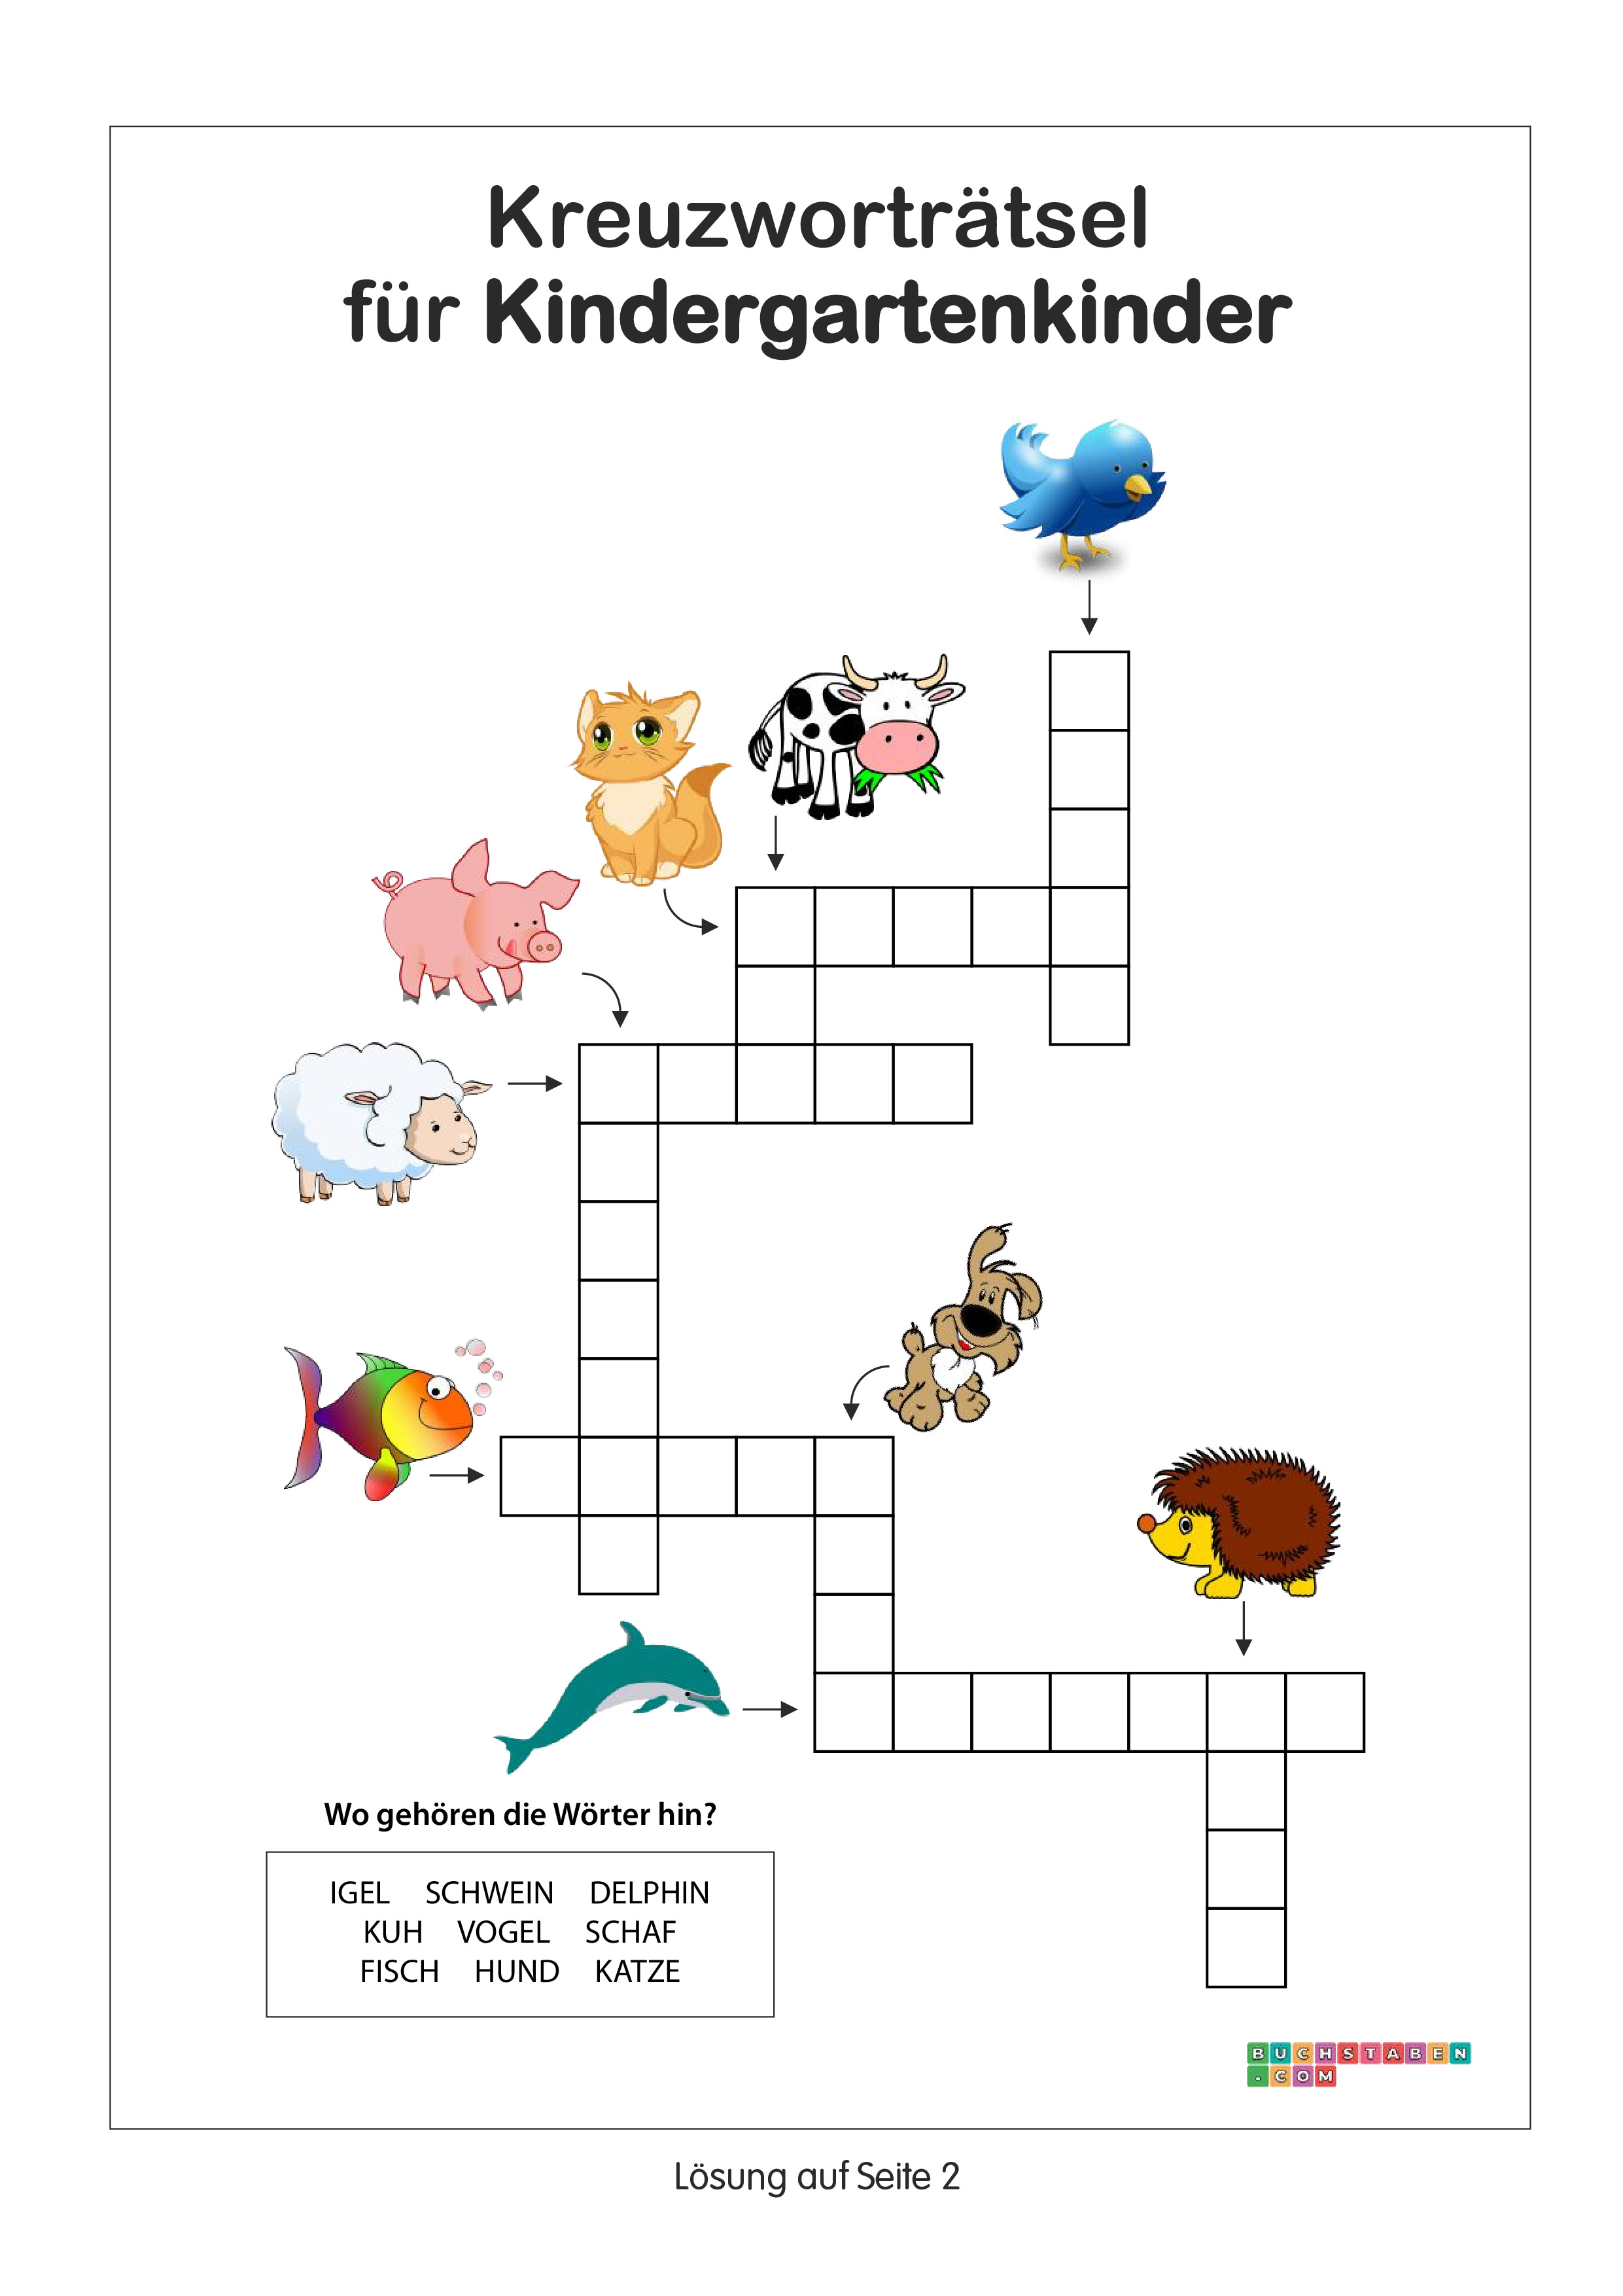 Kreuzworträtsel für Kindergartenkinder